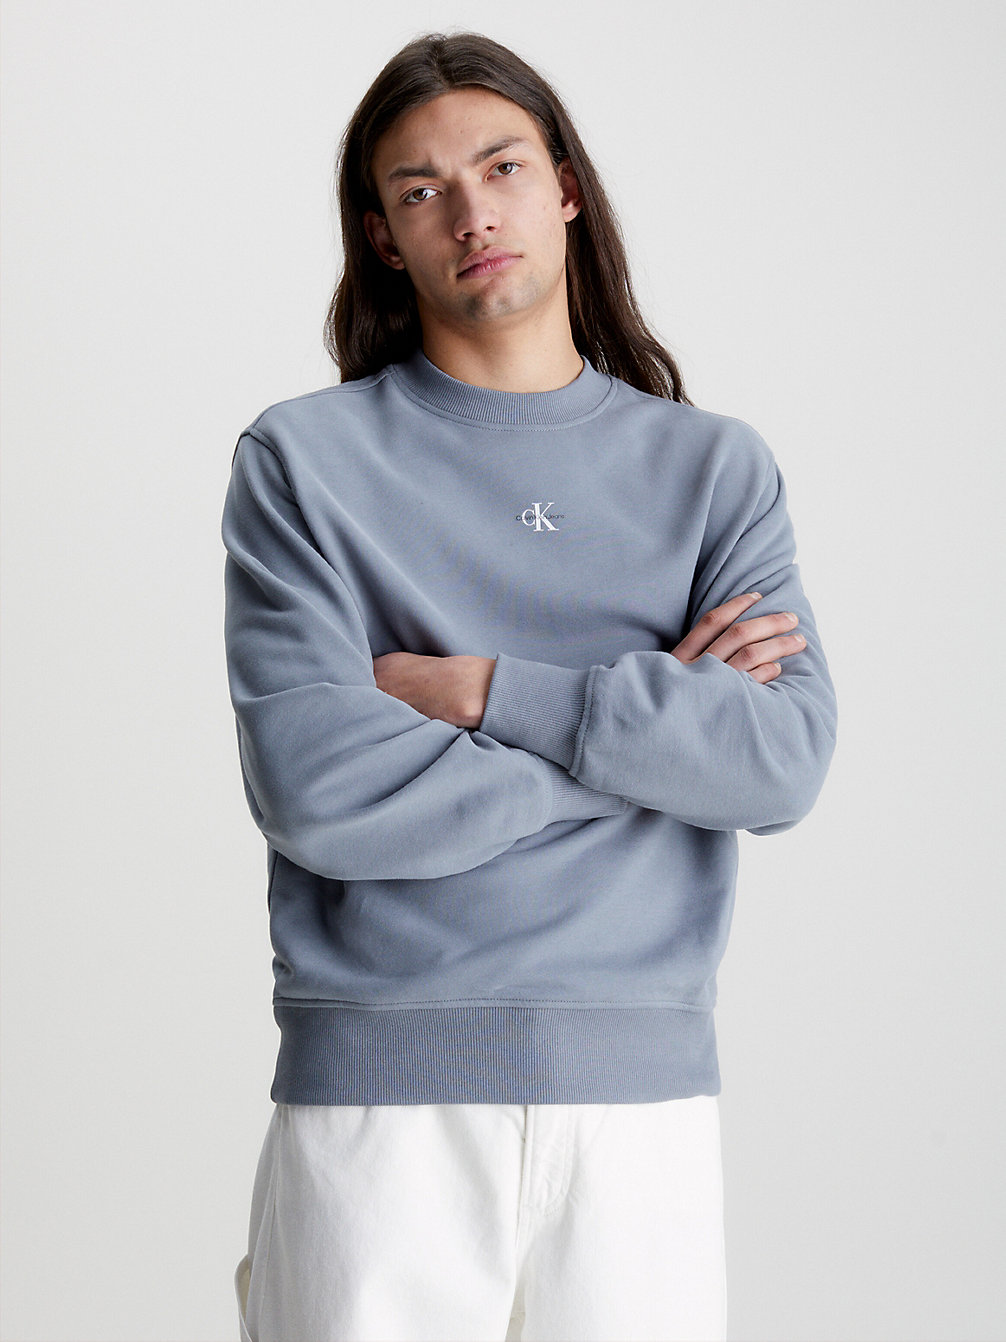 OVERCAST GREY Lässiges Monogramm-Sweatshirt undefined Herren Calvin Klein